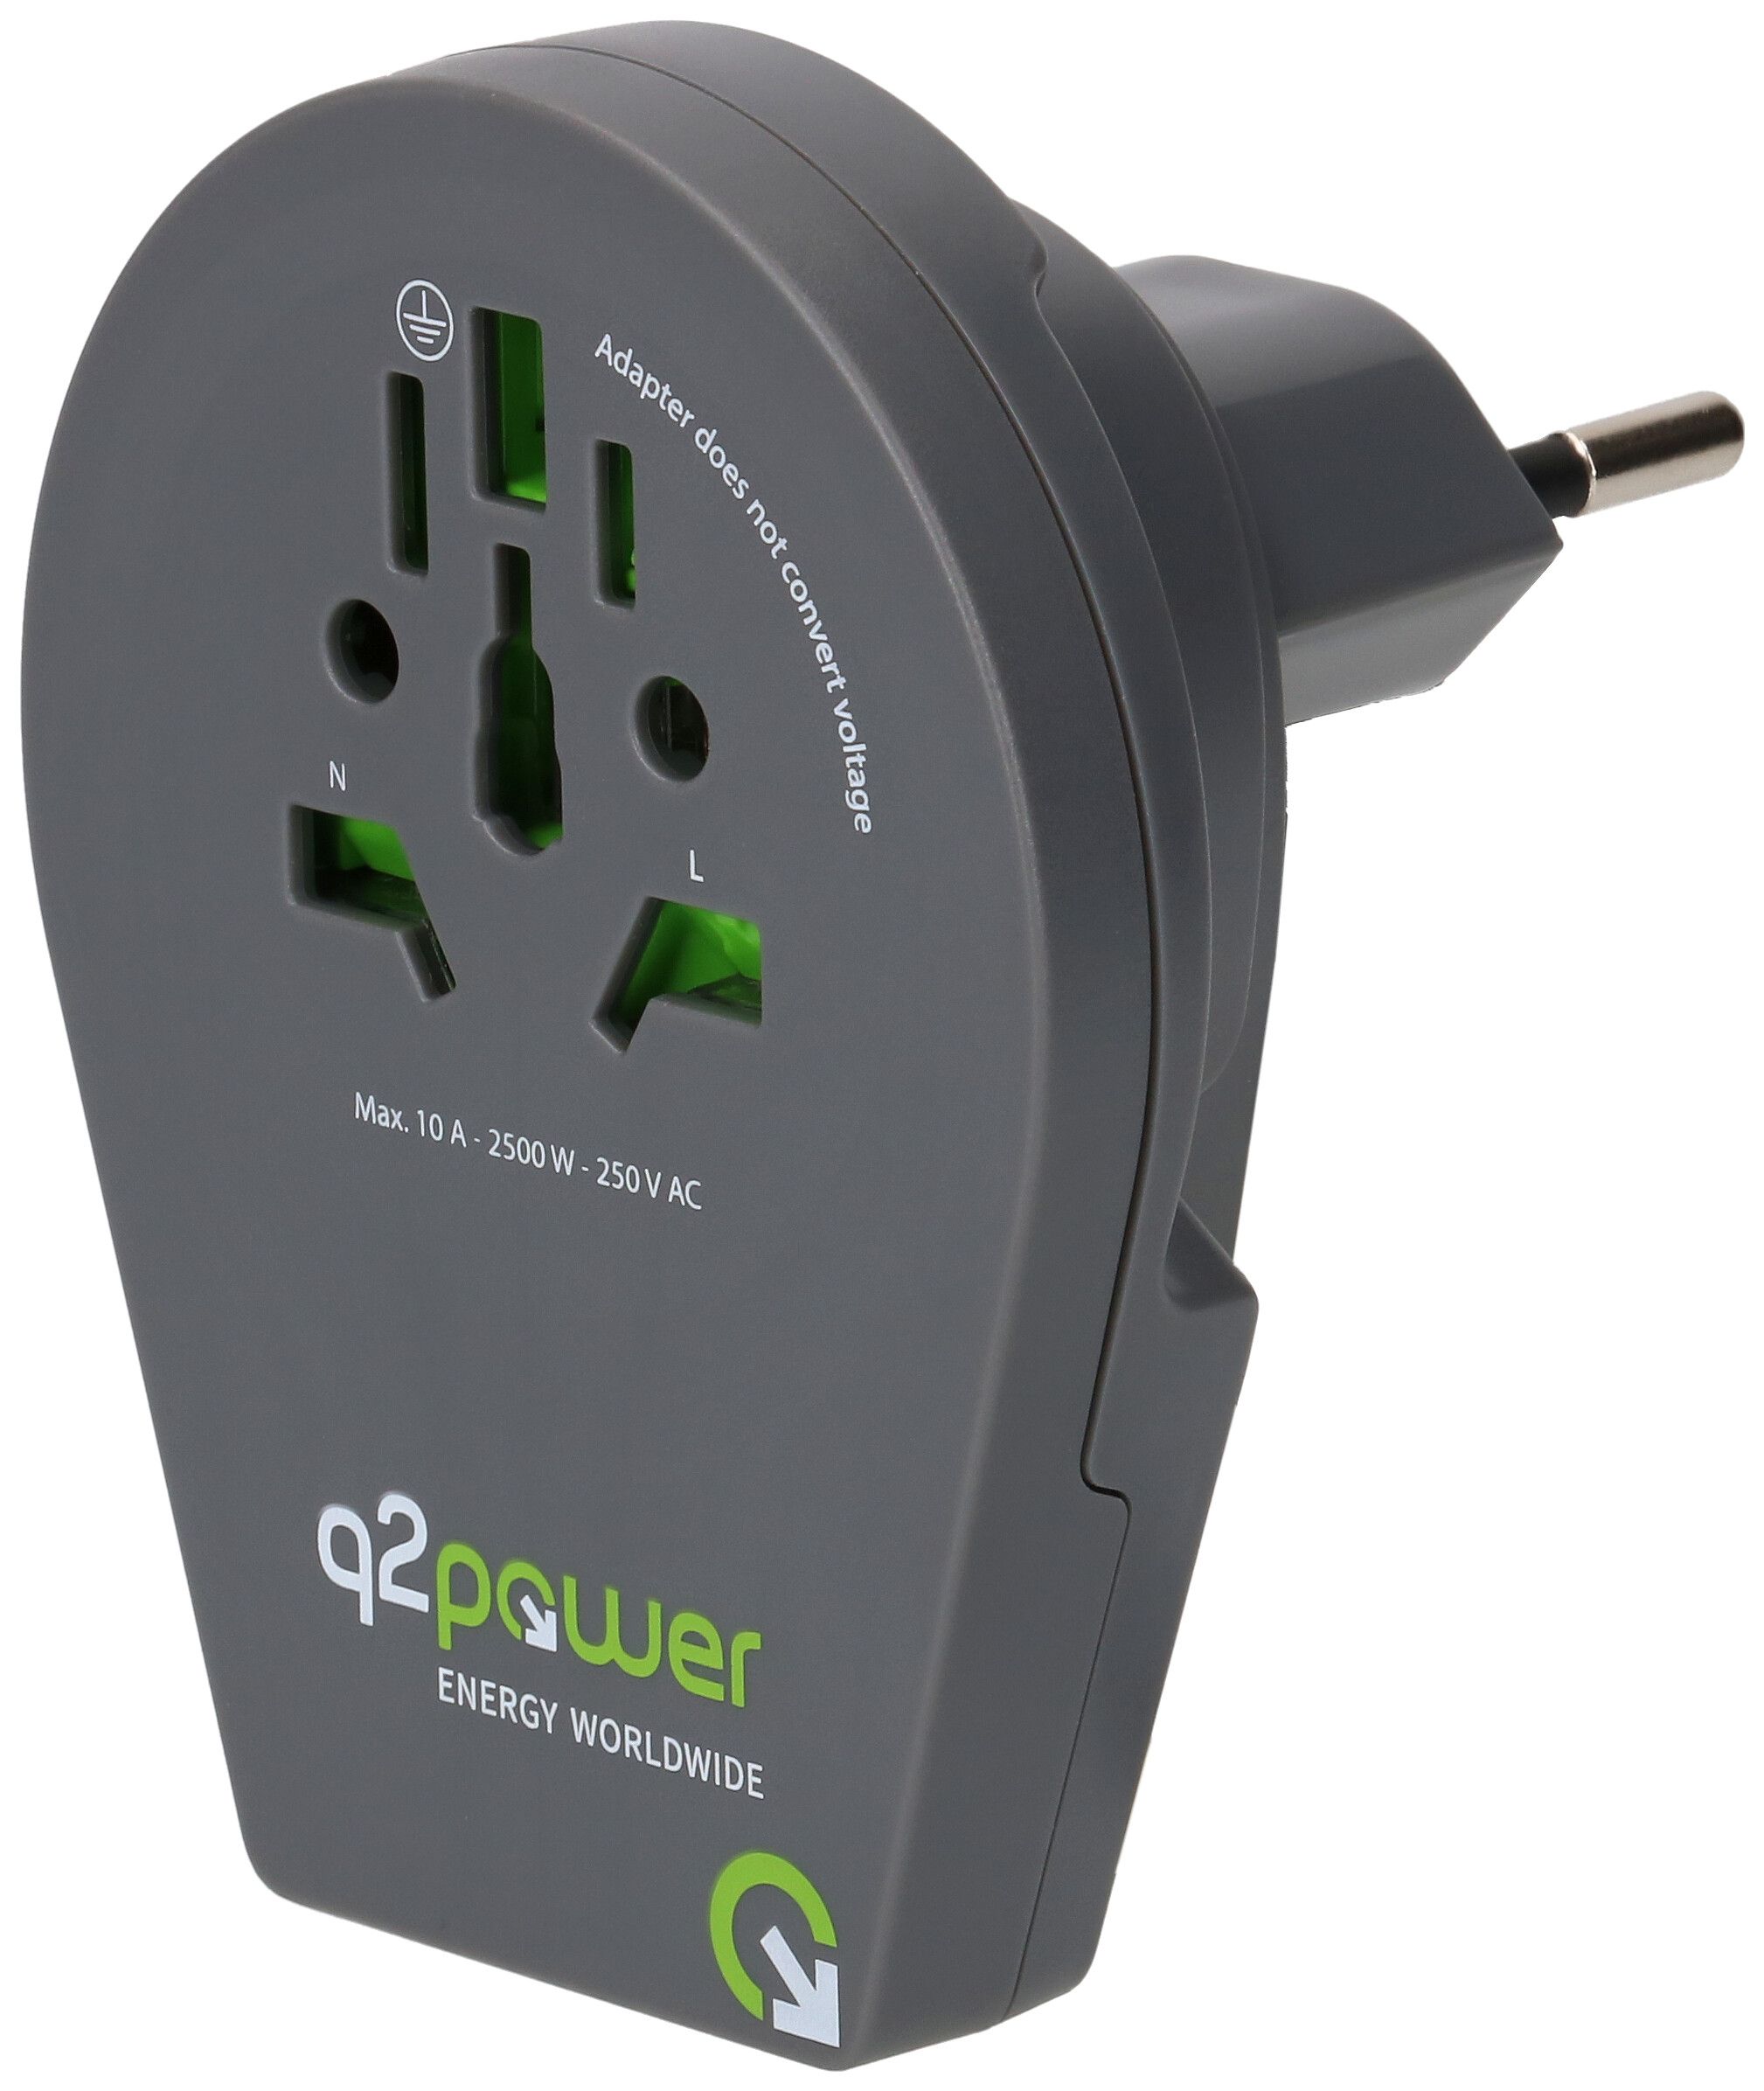 Q2 Power adaptateur mondial CH - USB - MAX HAURI AG